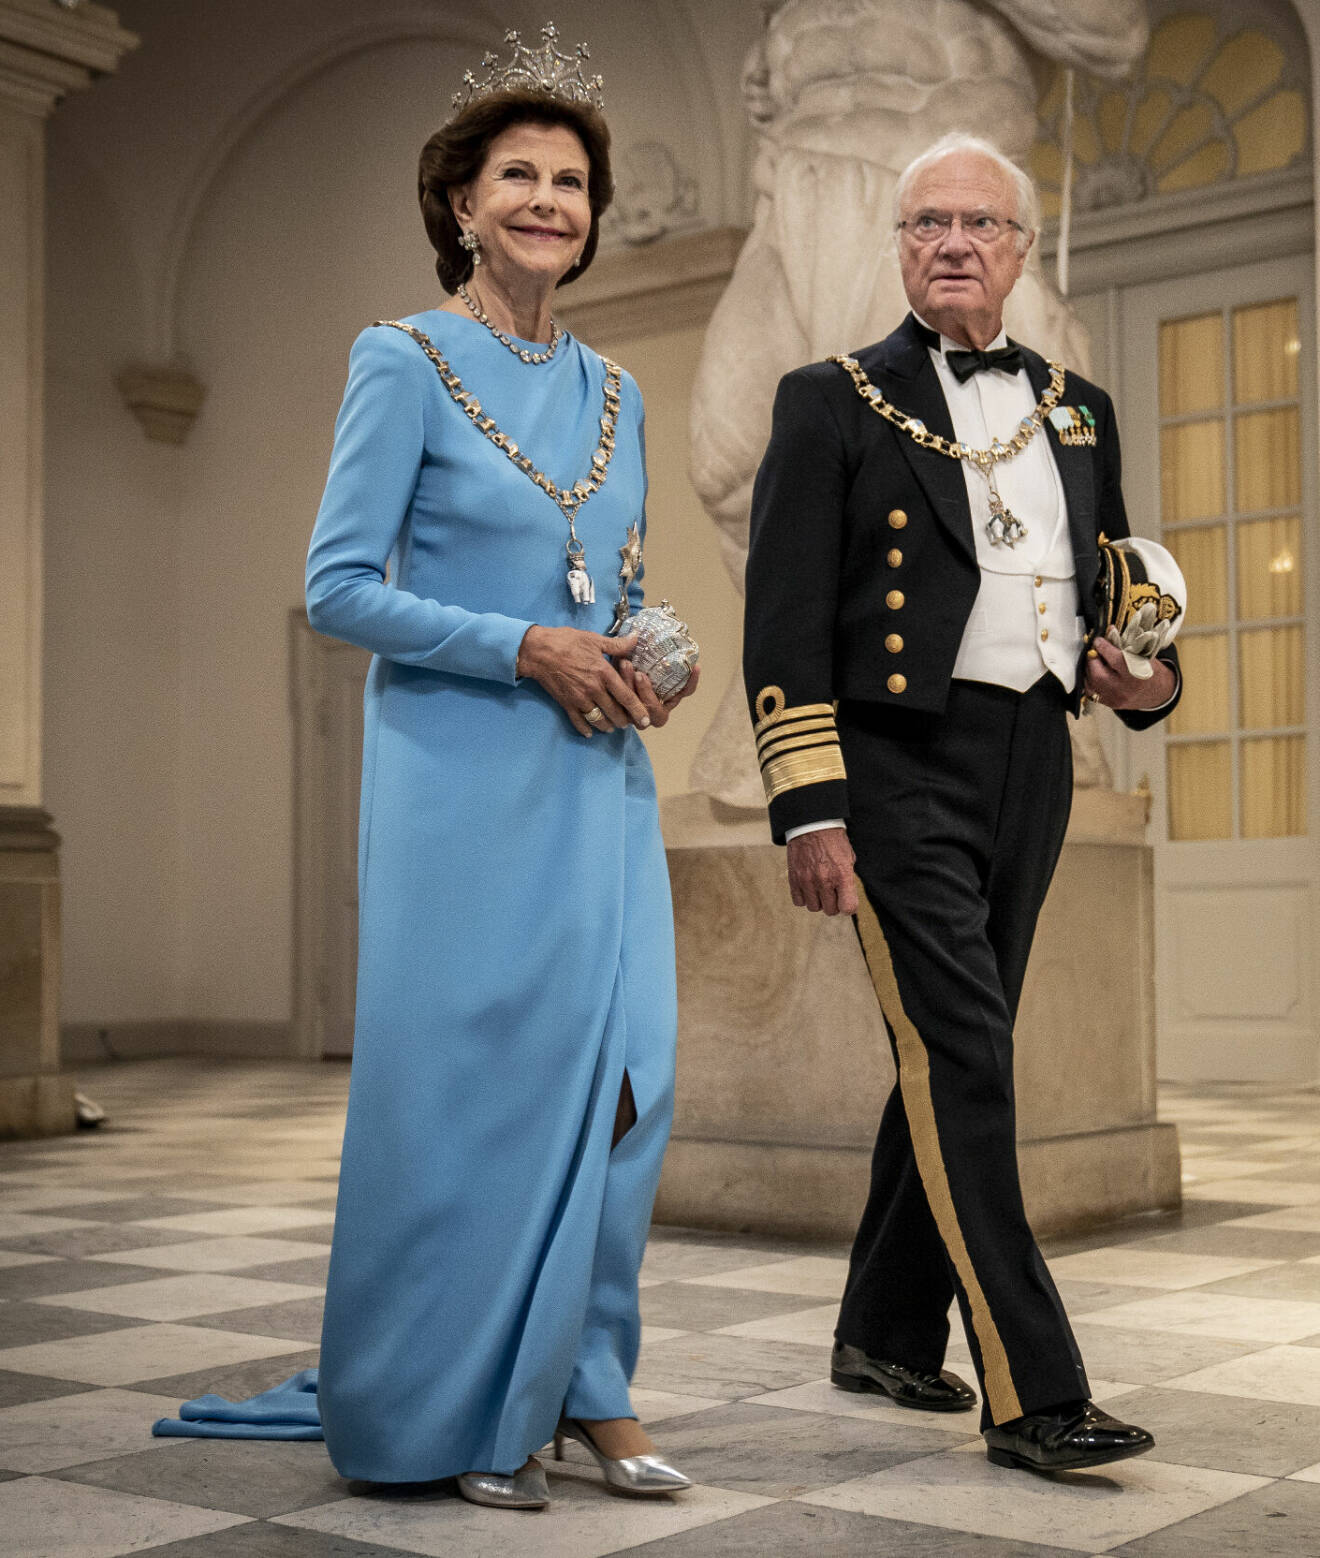 Kungen och drottning Silvia – hedersgäster vid drottning Margrethes tronjubileum 2022